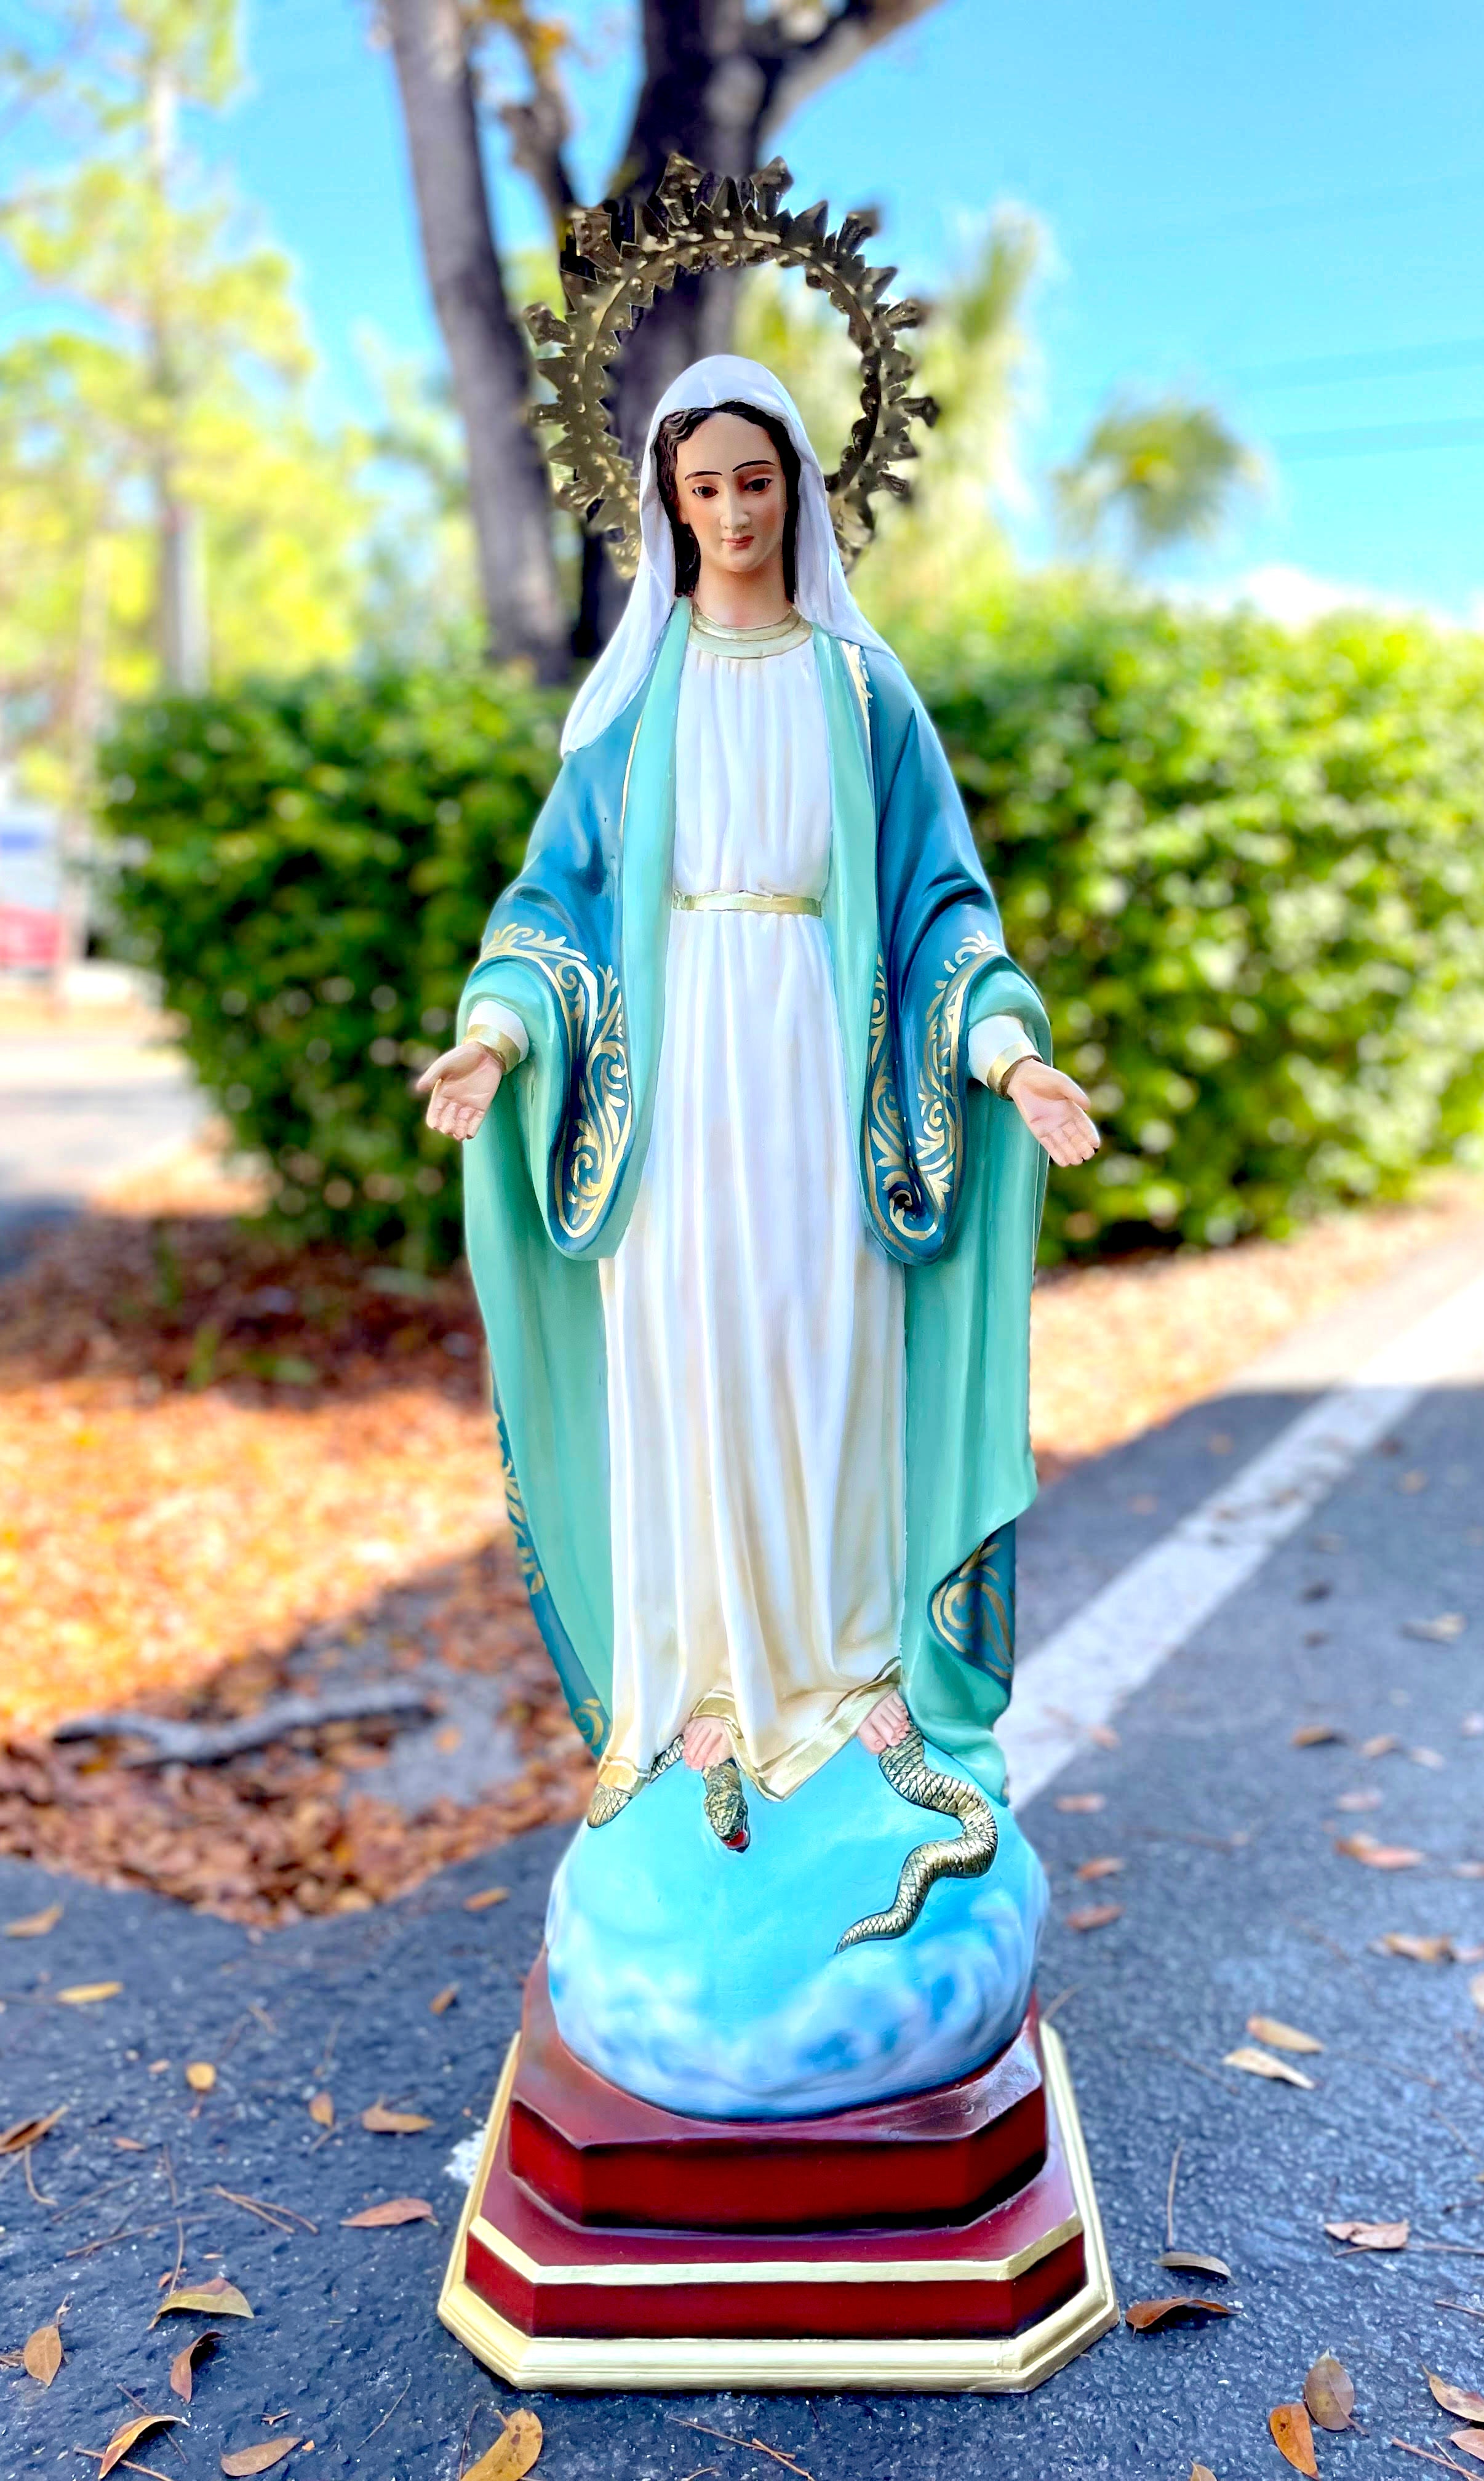 39" Our Lady of Grace Indoor and Outdoor Statue / Imagen de la Virgen Milagrosa de 39" para Interiores y Extreriores